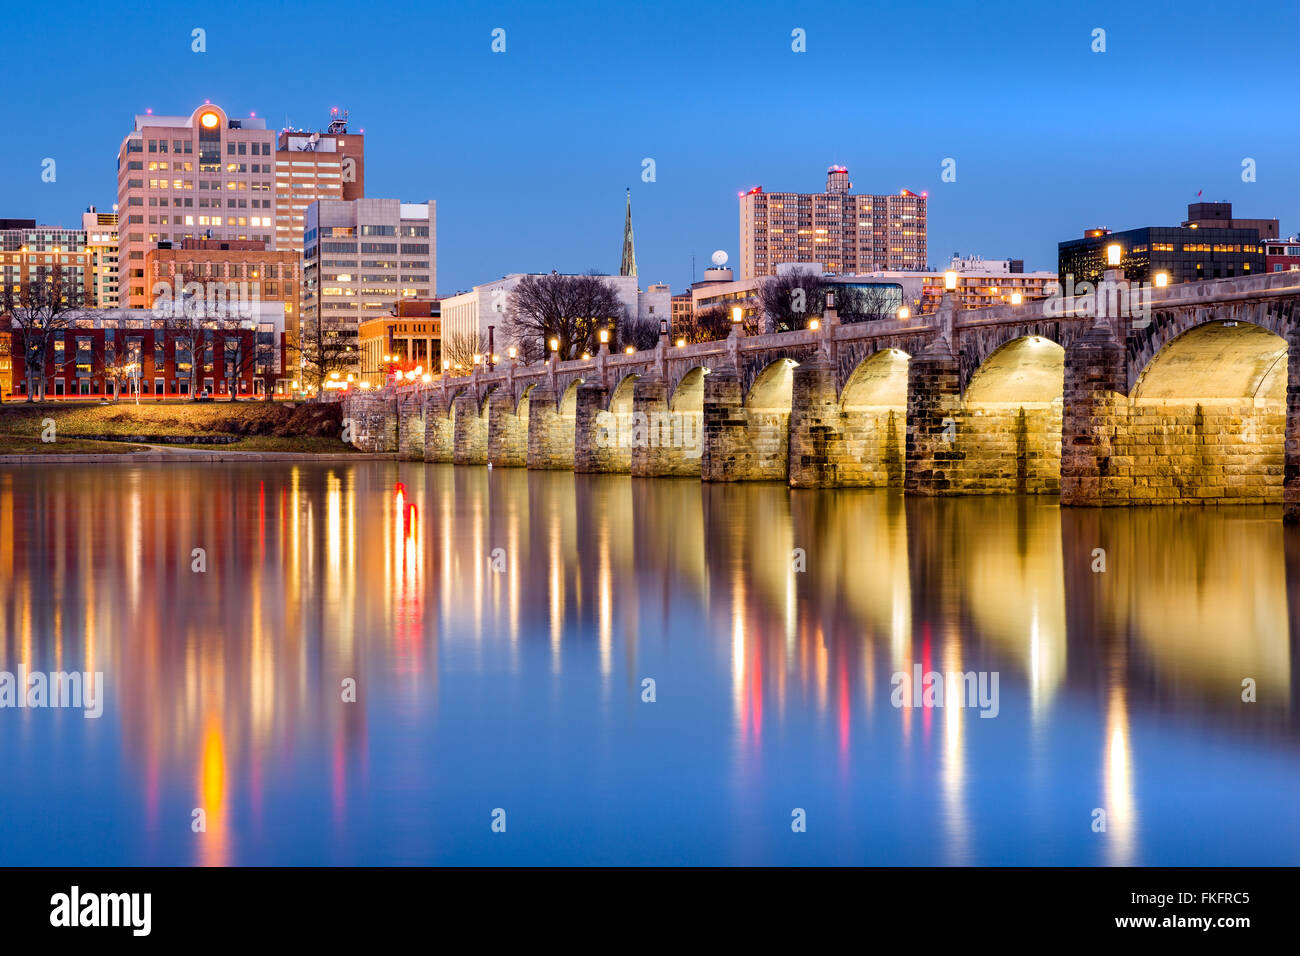 Harrisburg, Pennsylvanie skyline avec le Pont de la rue historique du marché reflétées sur la rivière Susquehanna au crépuscule Banque D'Images